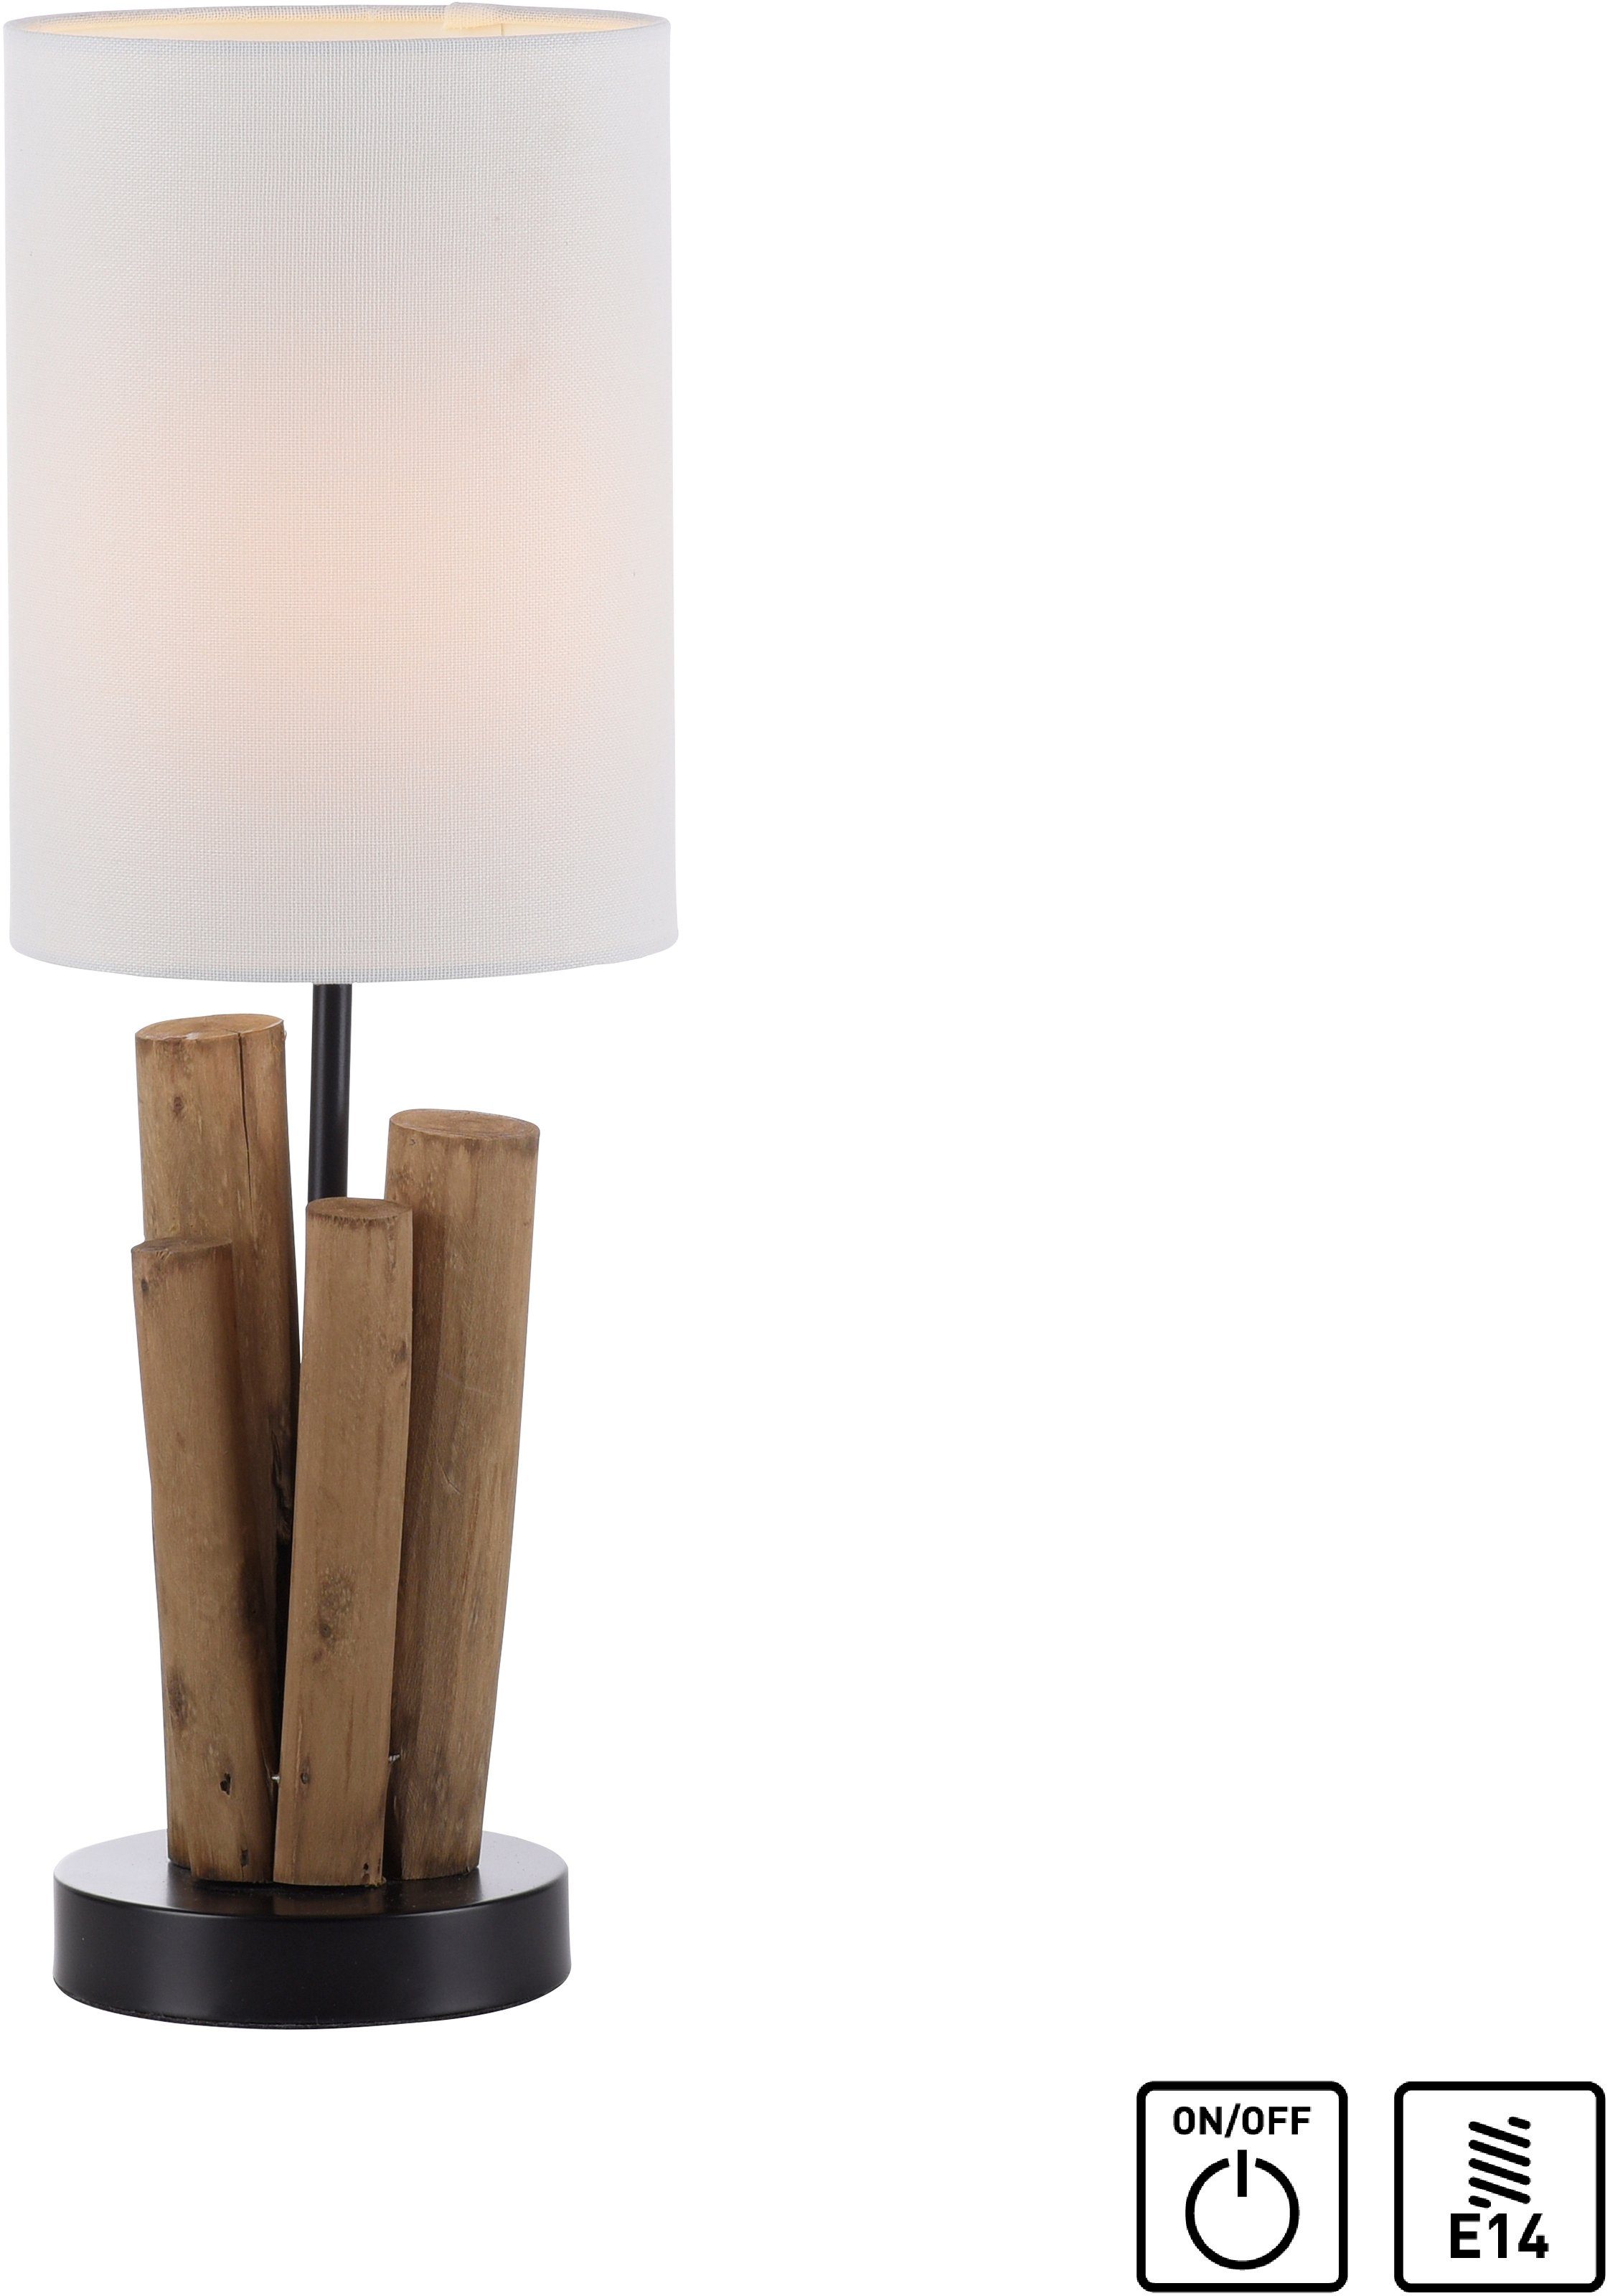 - Optik, Tischlampe Home Leuchtmittel Horgau, Vintage Holz Style, Tischleuchte wechselbar, Schnurschalter, affaire